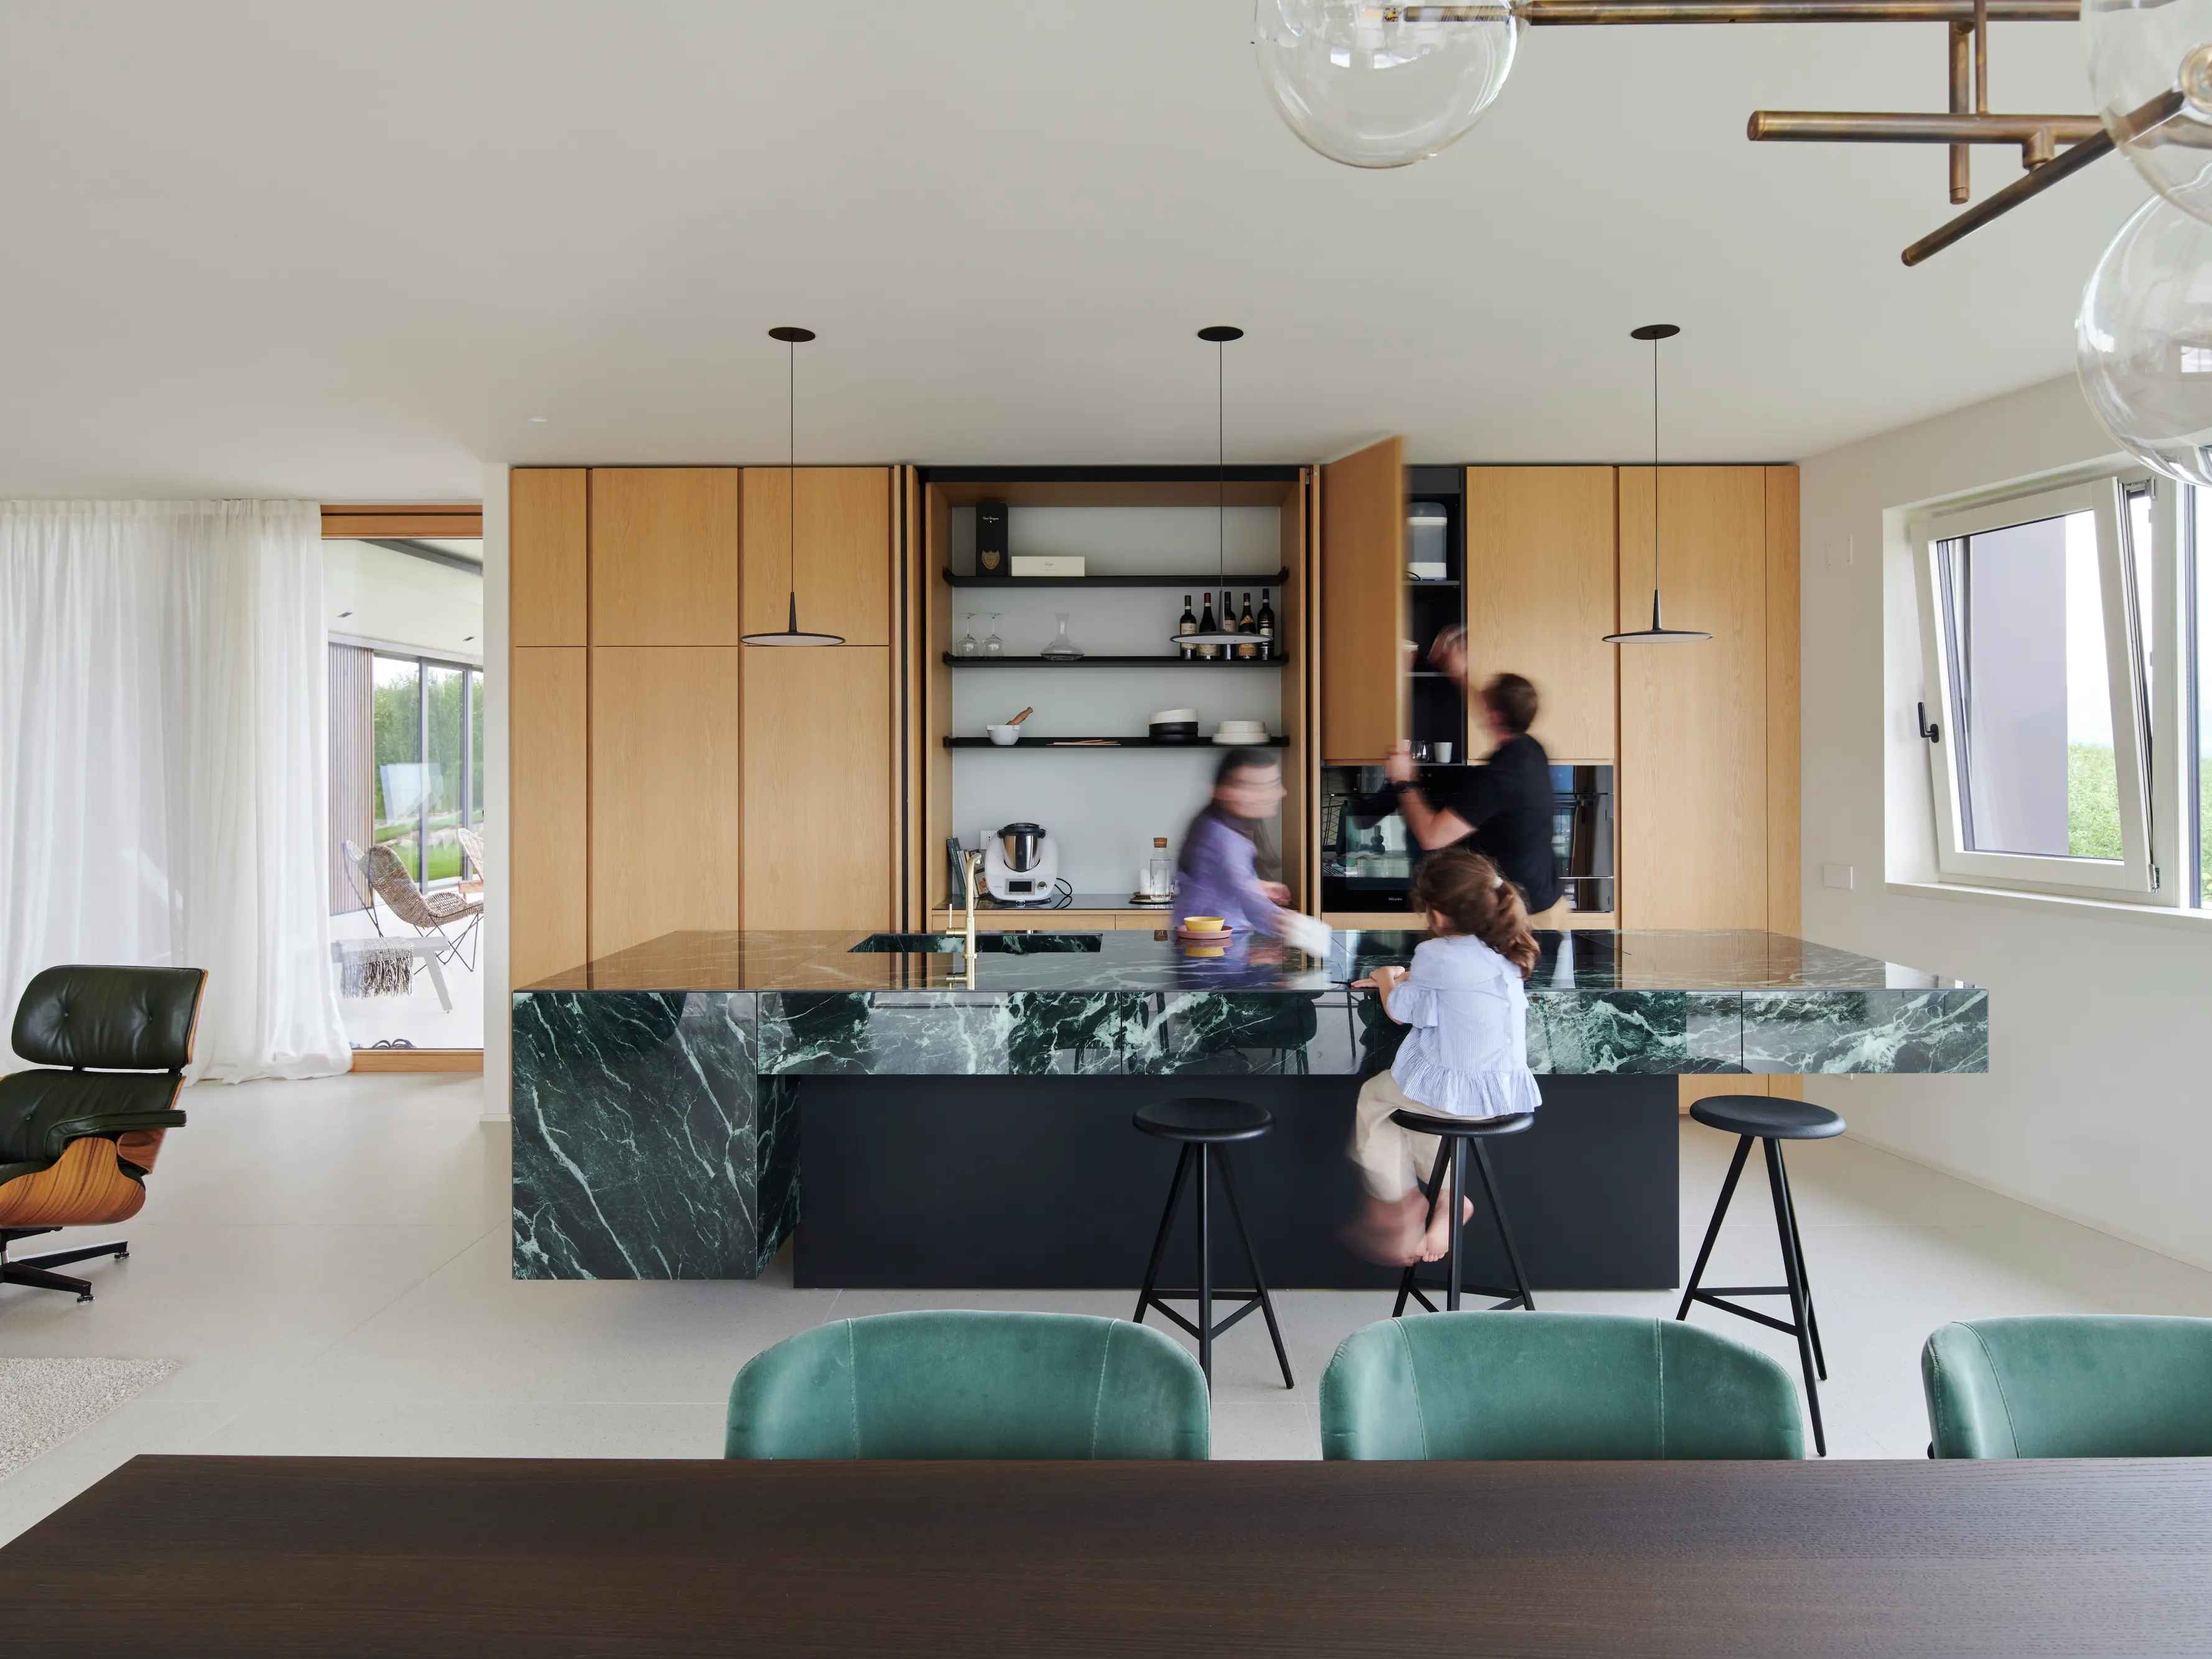 Cuisine moderne spacieuse avec des armoires en bois, un îlot en marbre vert et une famille qui interagit.